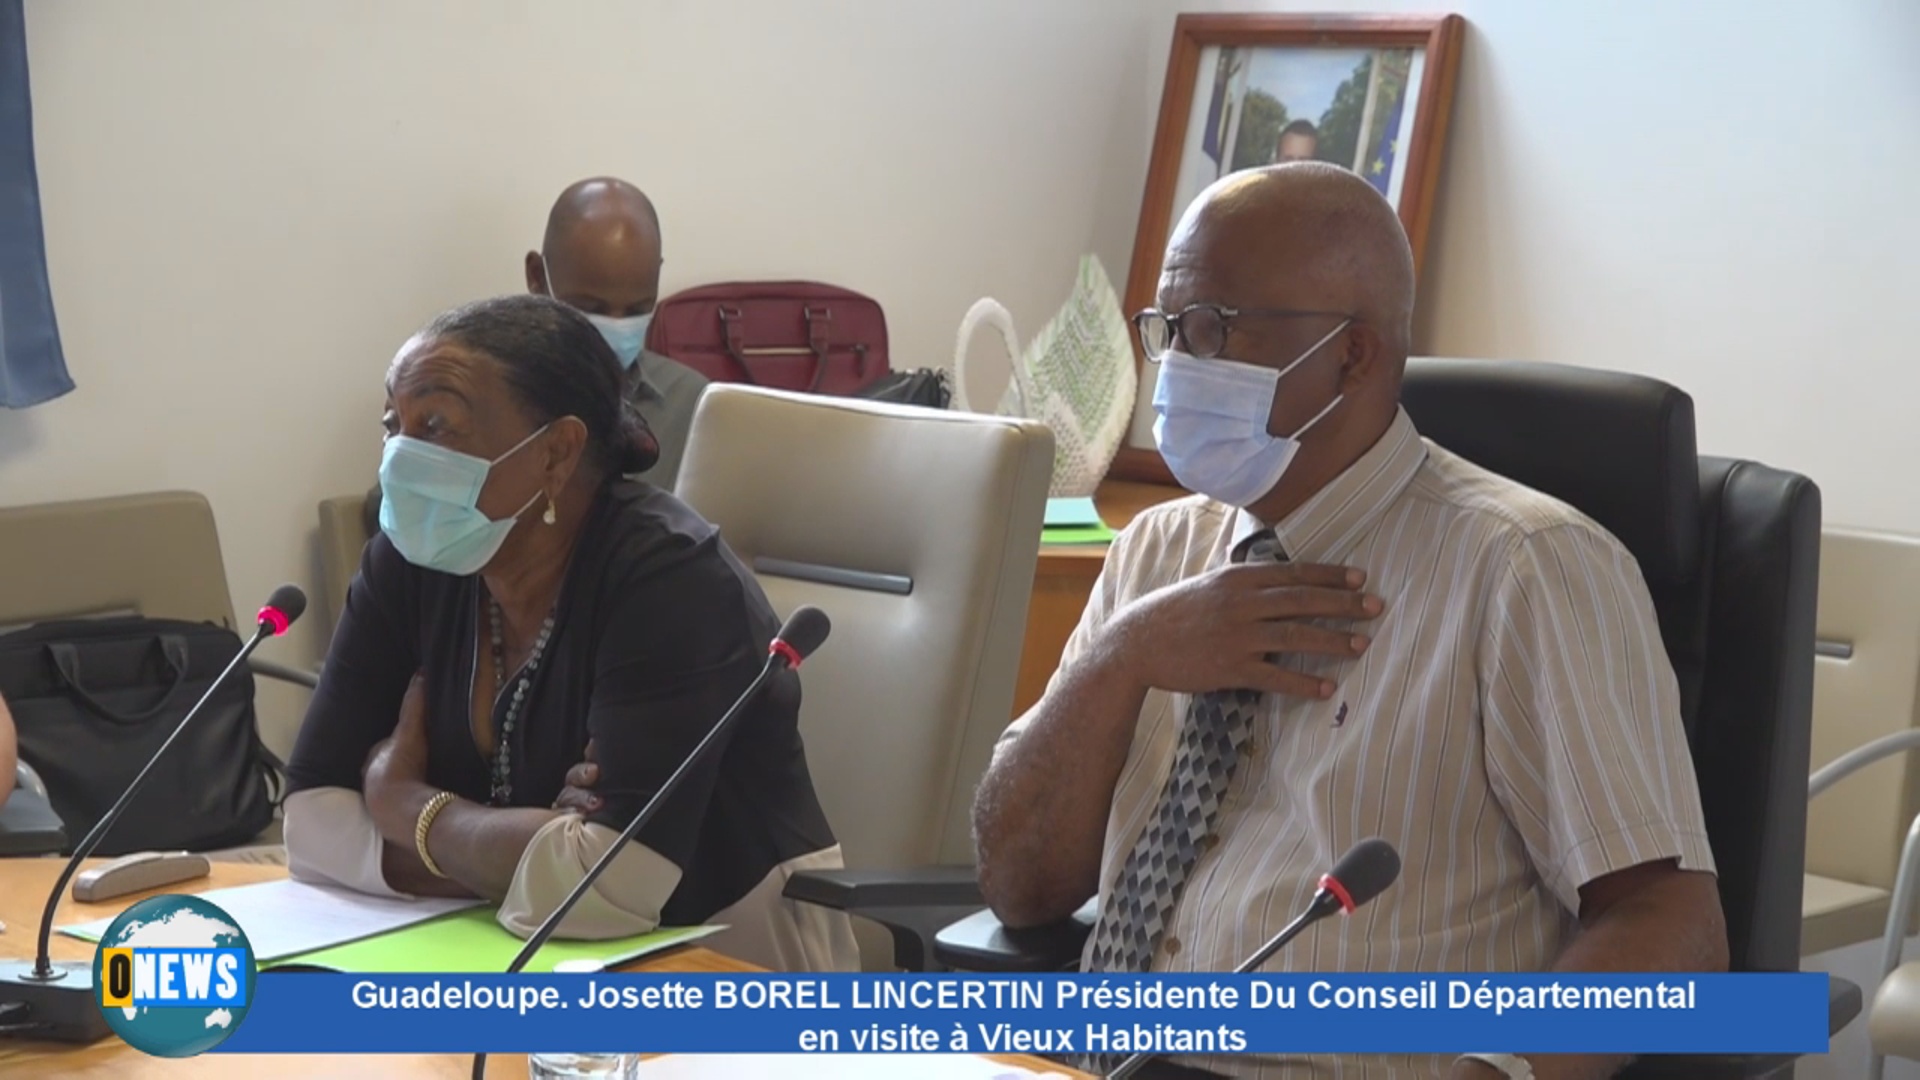 [Vidéo] Onews Guadeloupe. Visite à Vieux Habitants de Josette BOREL LINCERTIN Présidente du Conseil Départemental